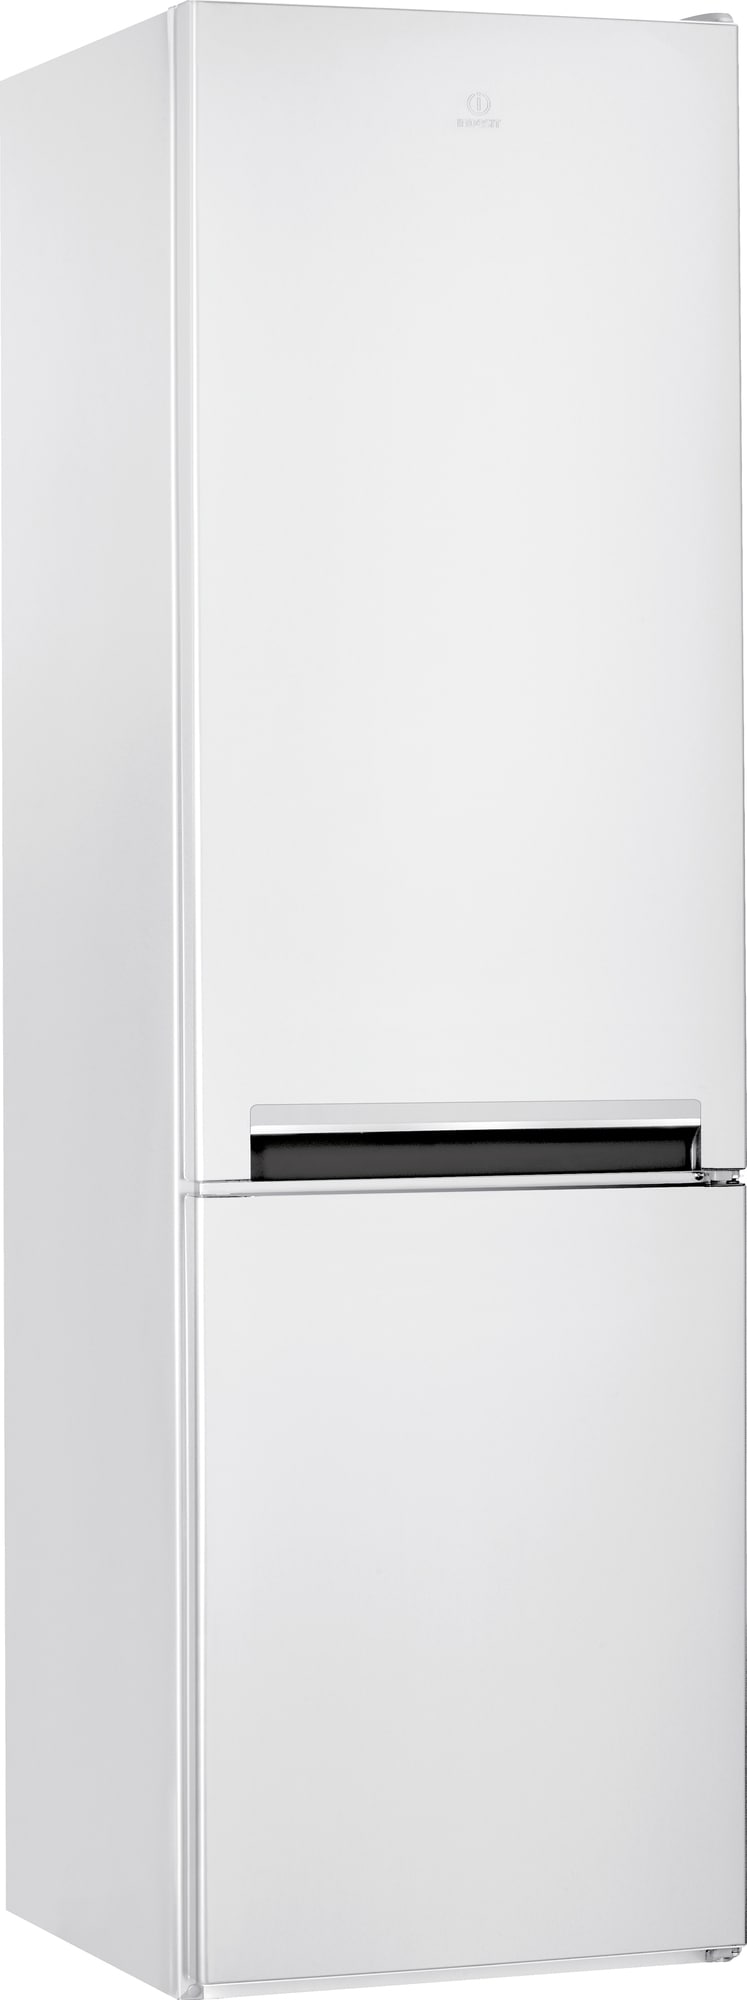 Se en oversigt over alle produkter på Køleskab-med-fryser.dk her!